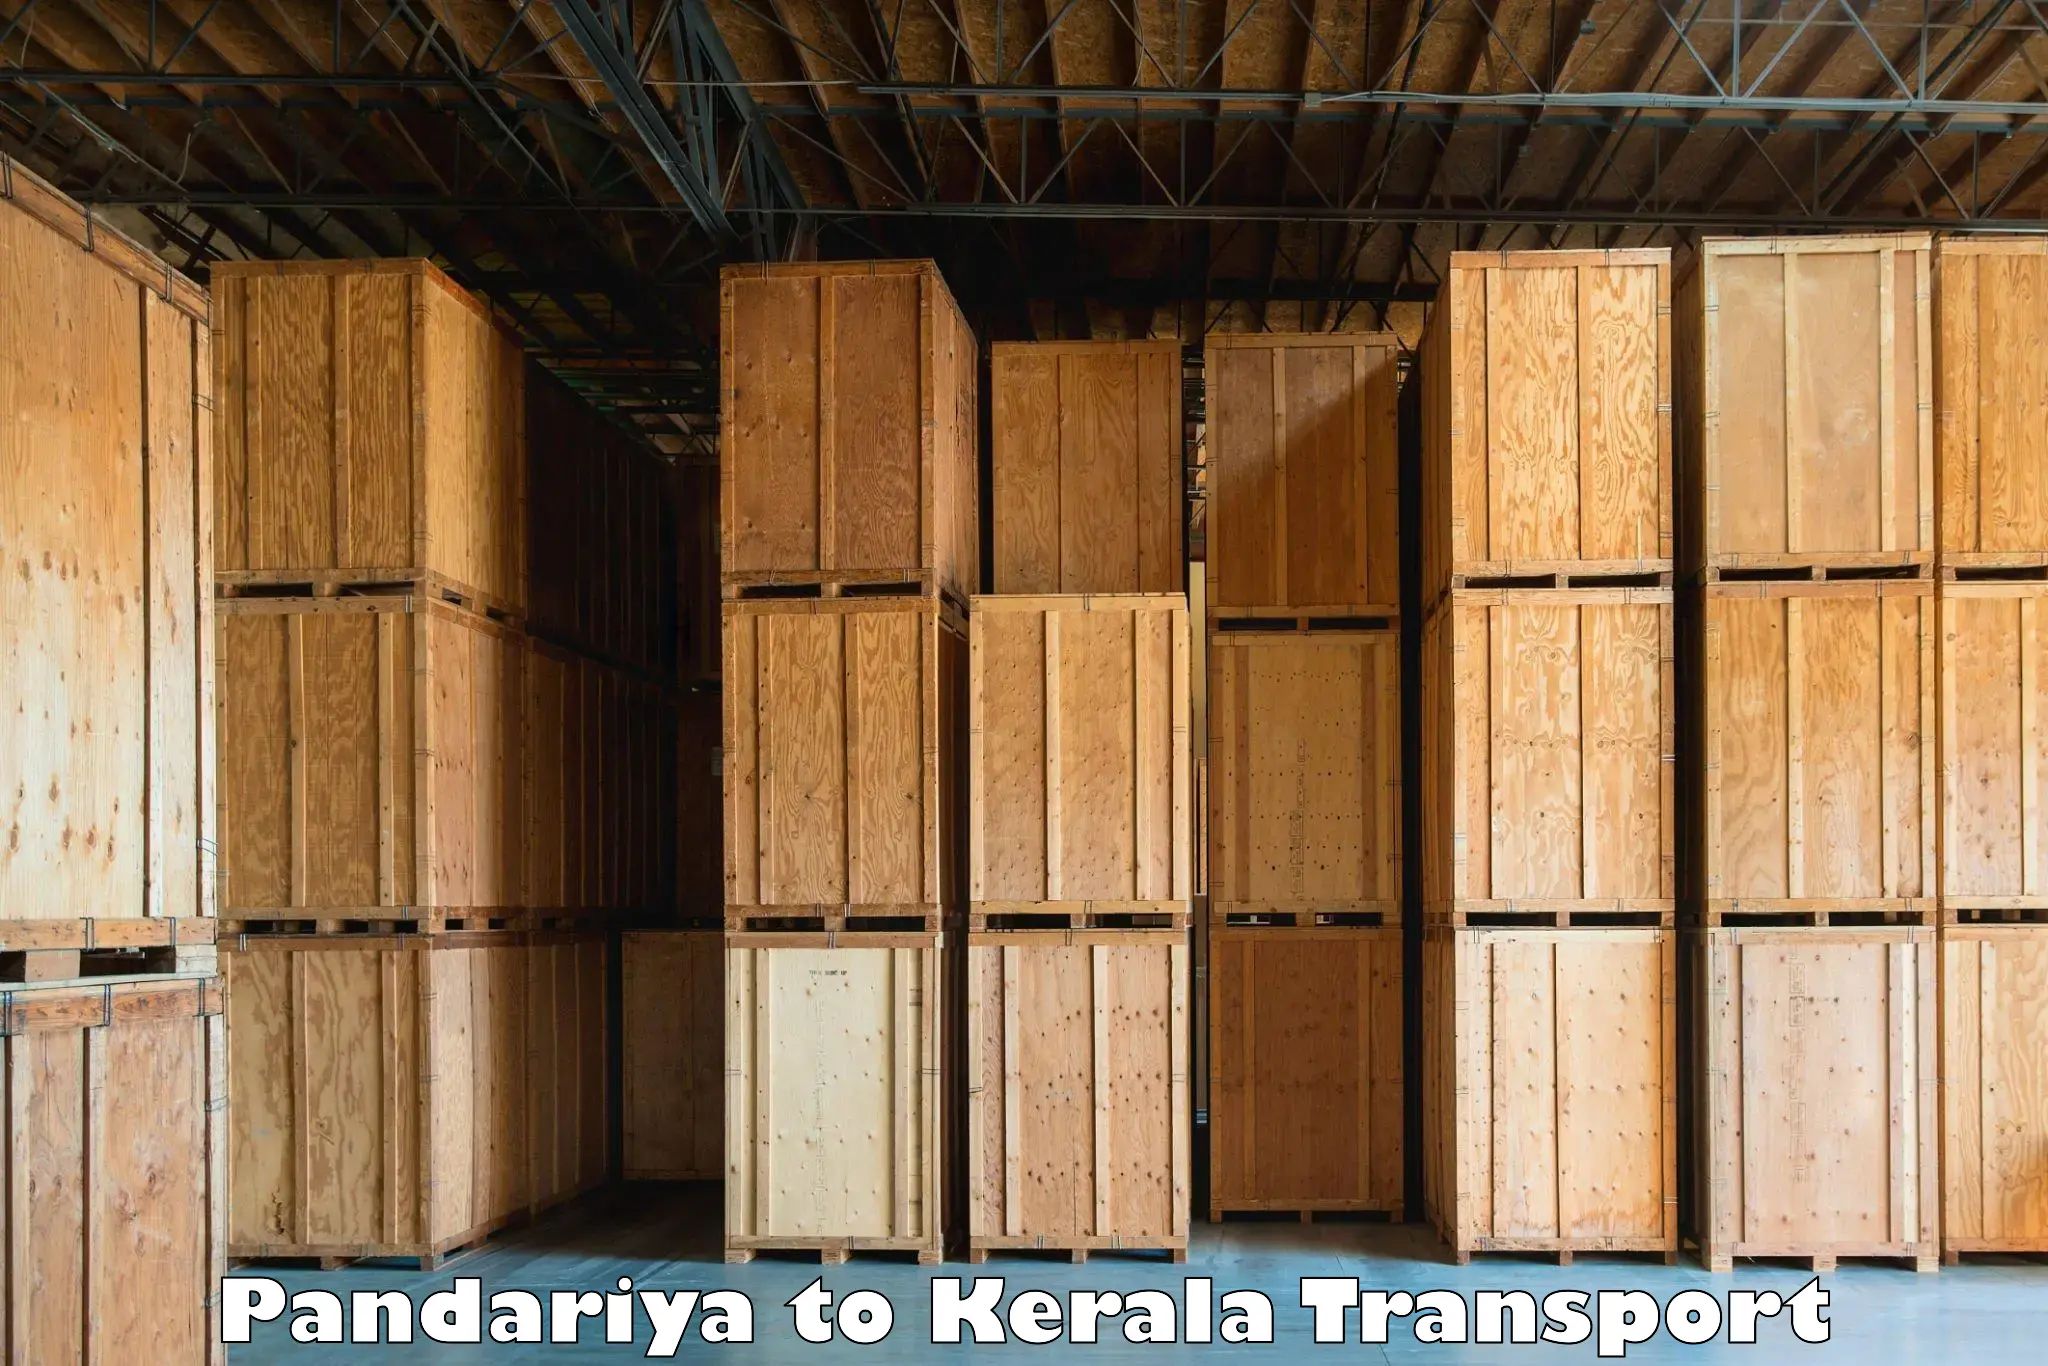 Transport services Pandariya to Kerala